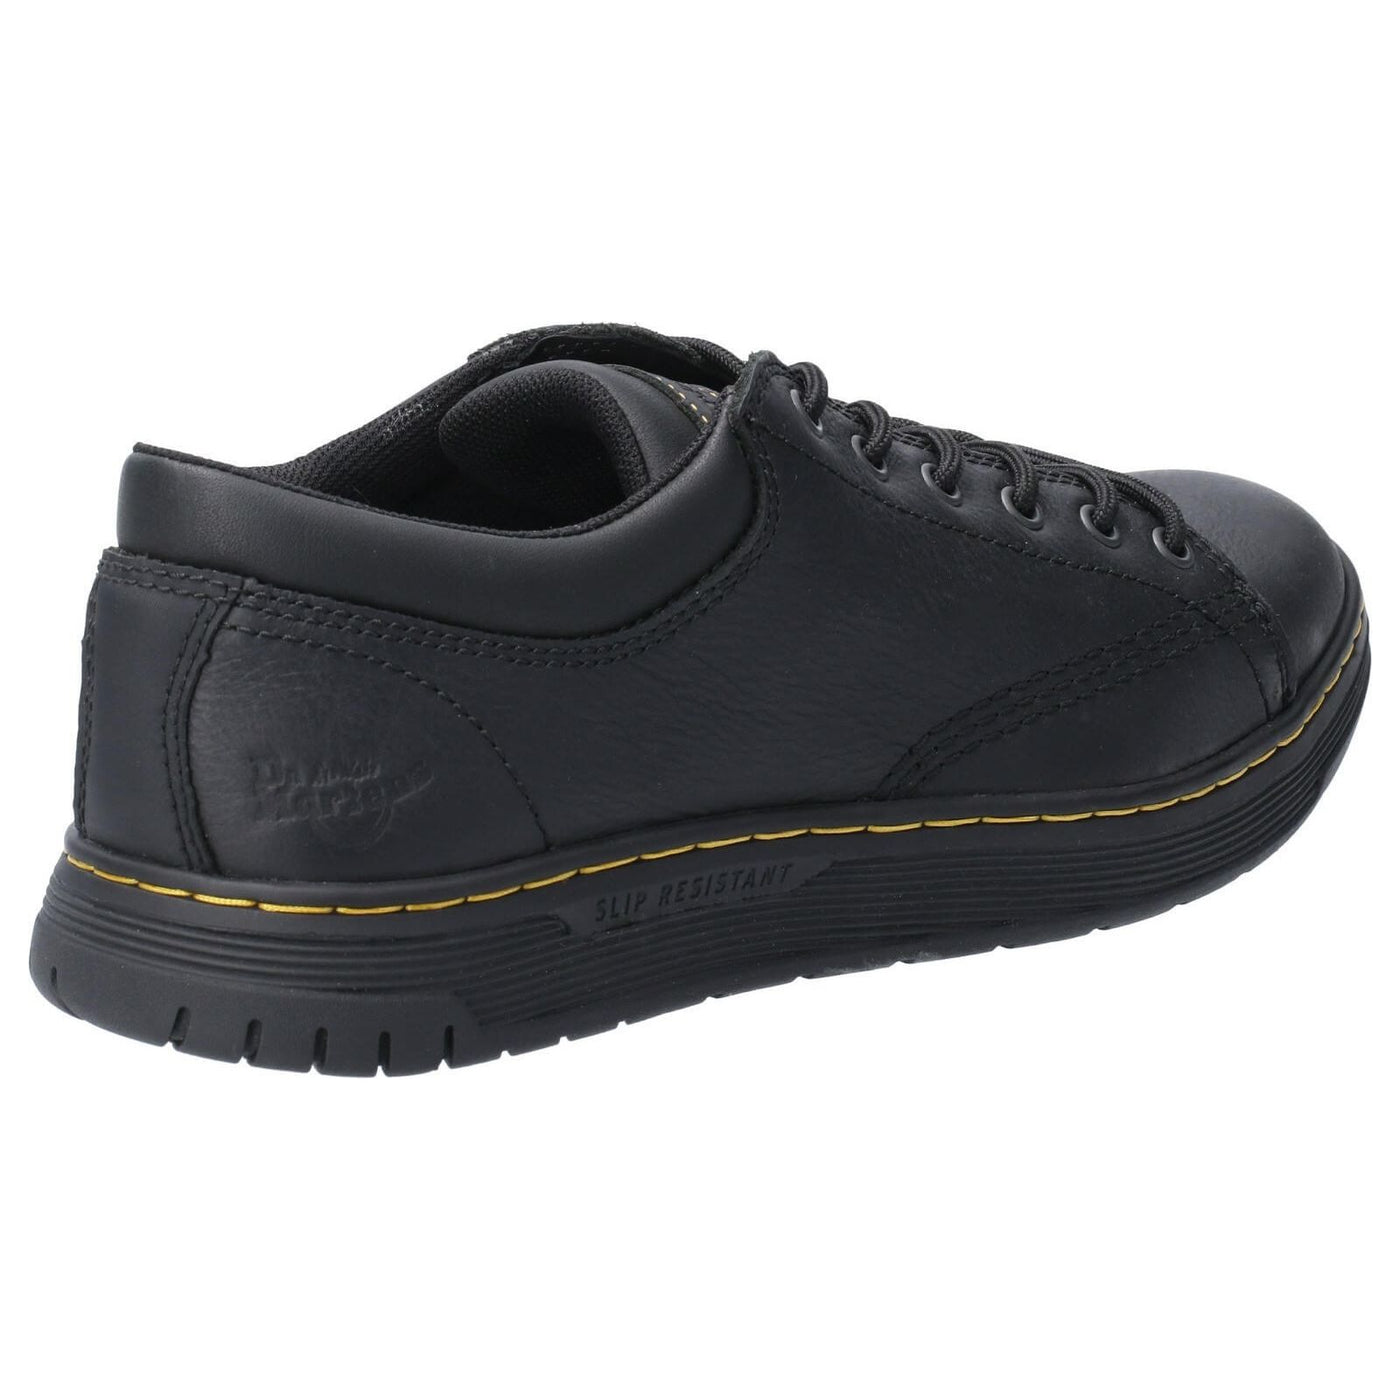 Dr Martens Maltby SR Safety Shoes-Black-2